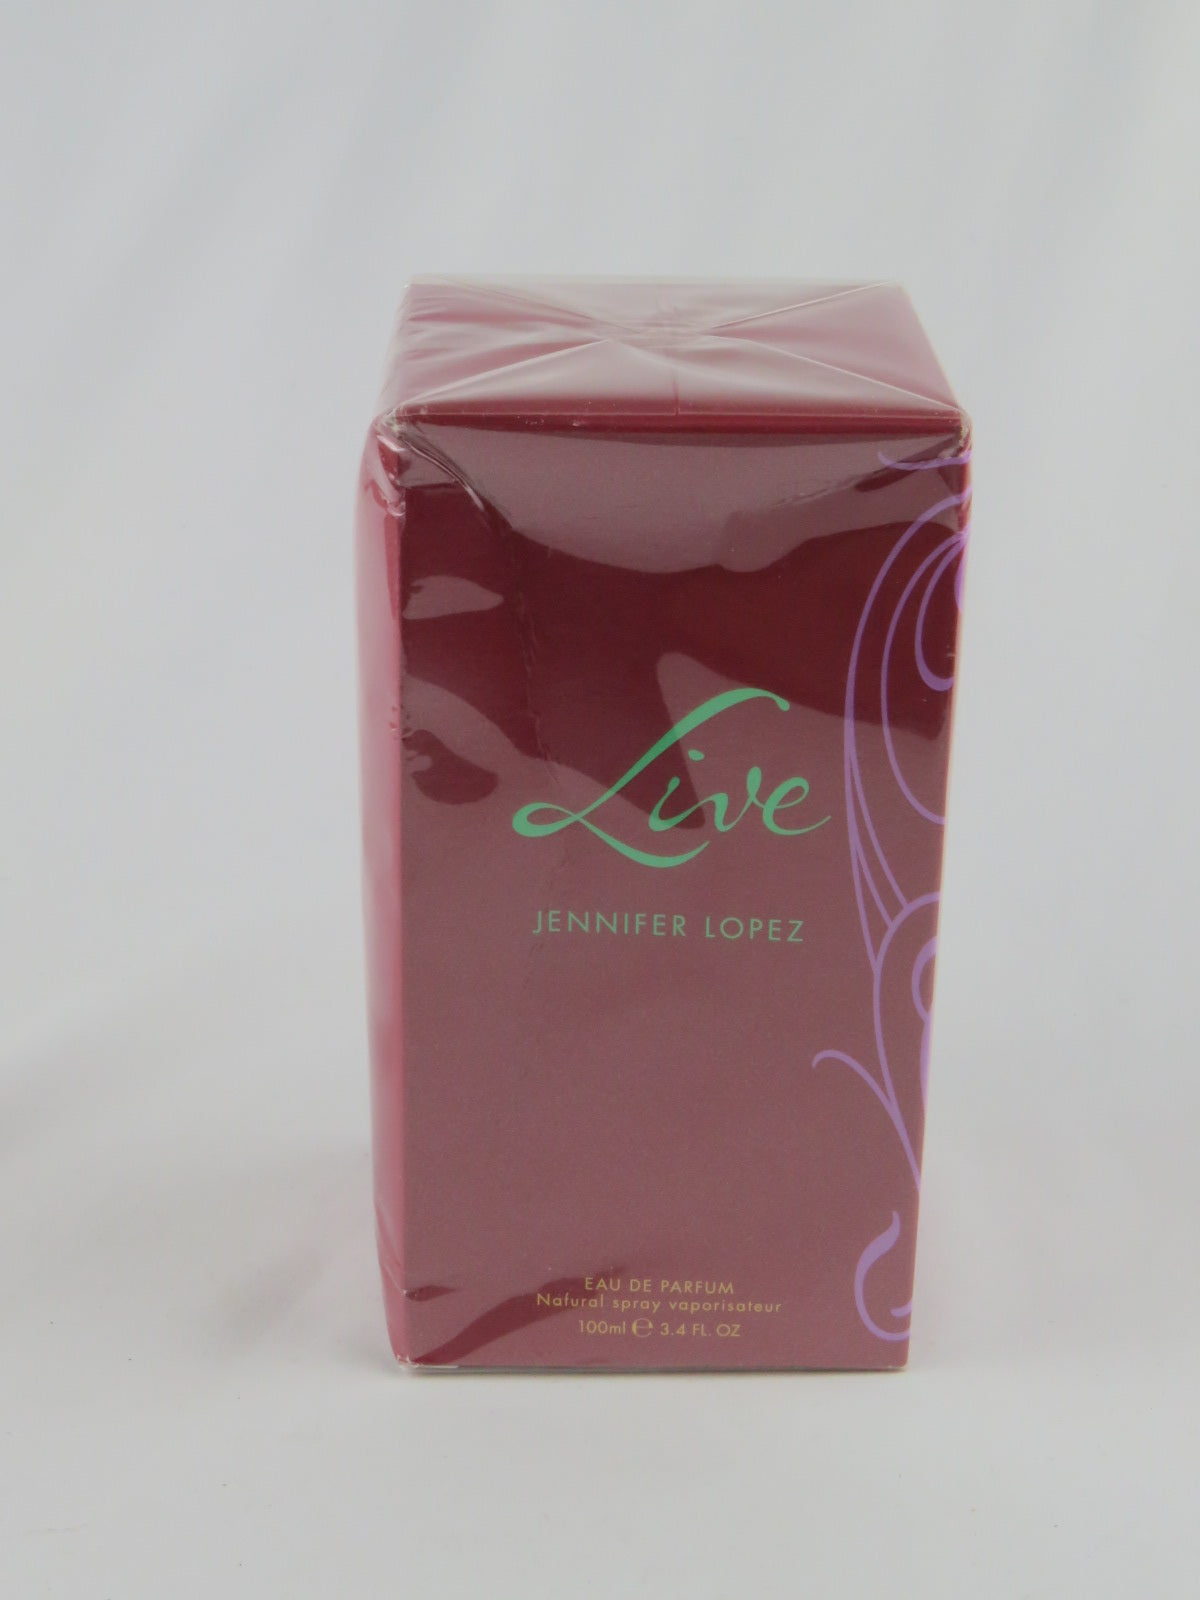 Perfume Live by Jennifer Lopez Eau De Parfum Spray 3.4 oz for Women - Banachief Outlet